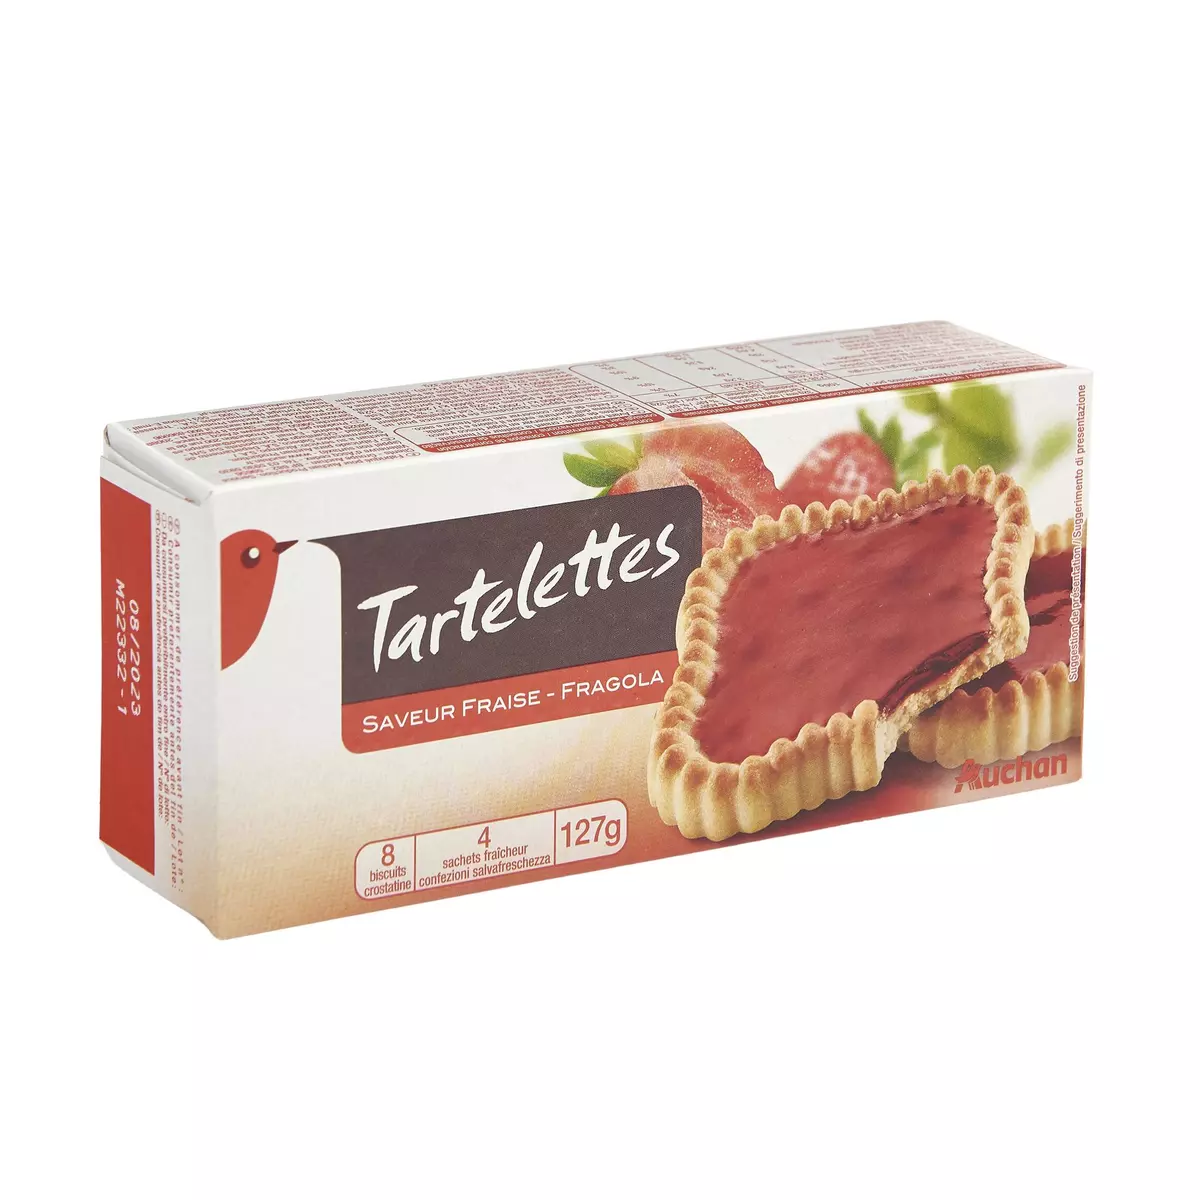 AUCHAN Tartelettes carrées fraise sachets fraîcheur 4x2 biscuits 127g